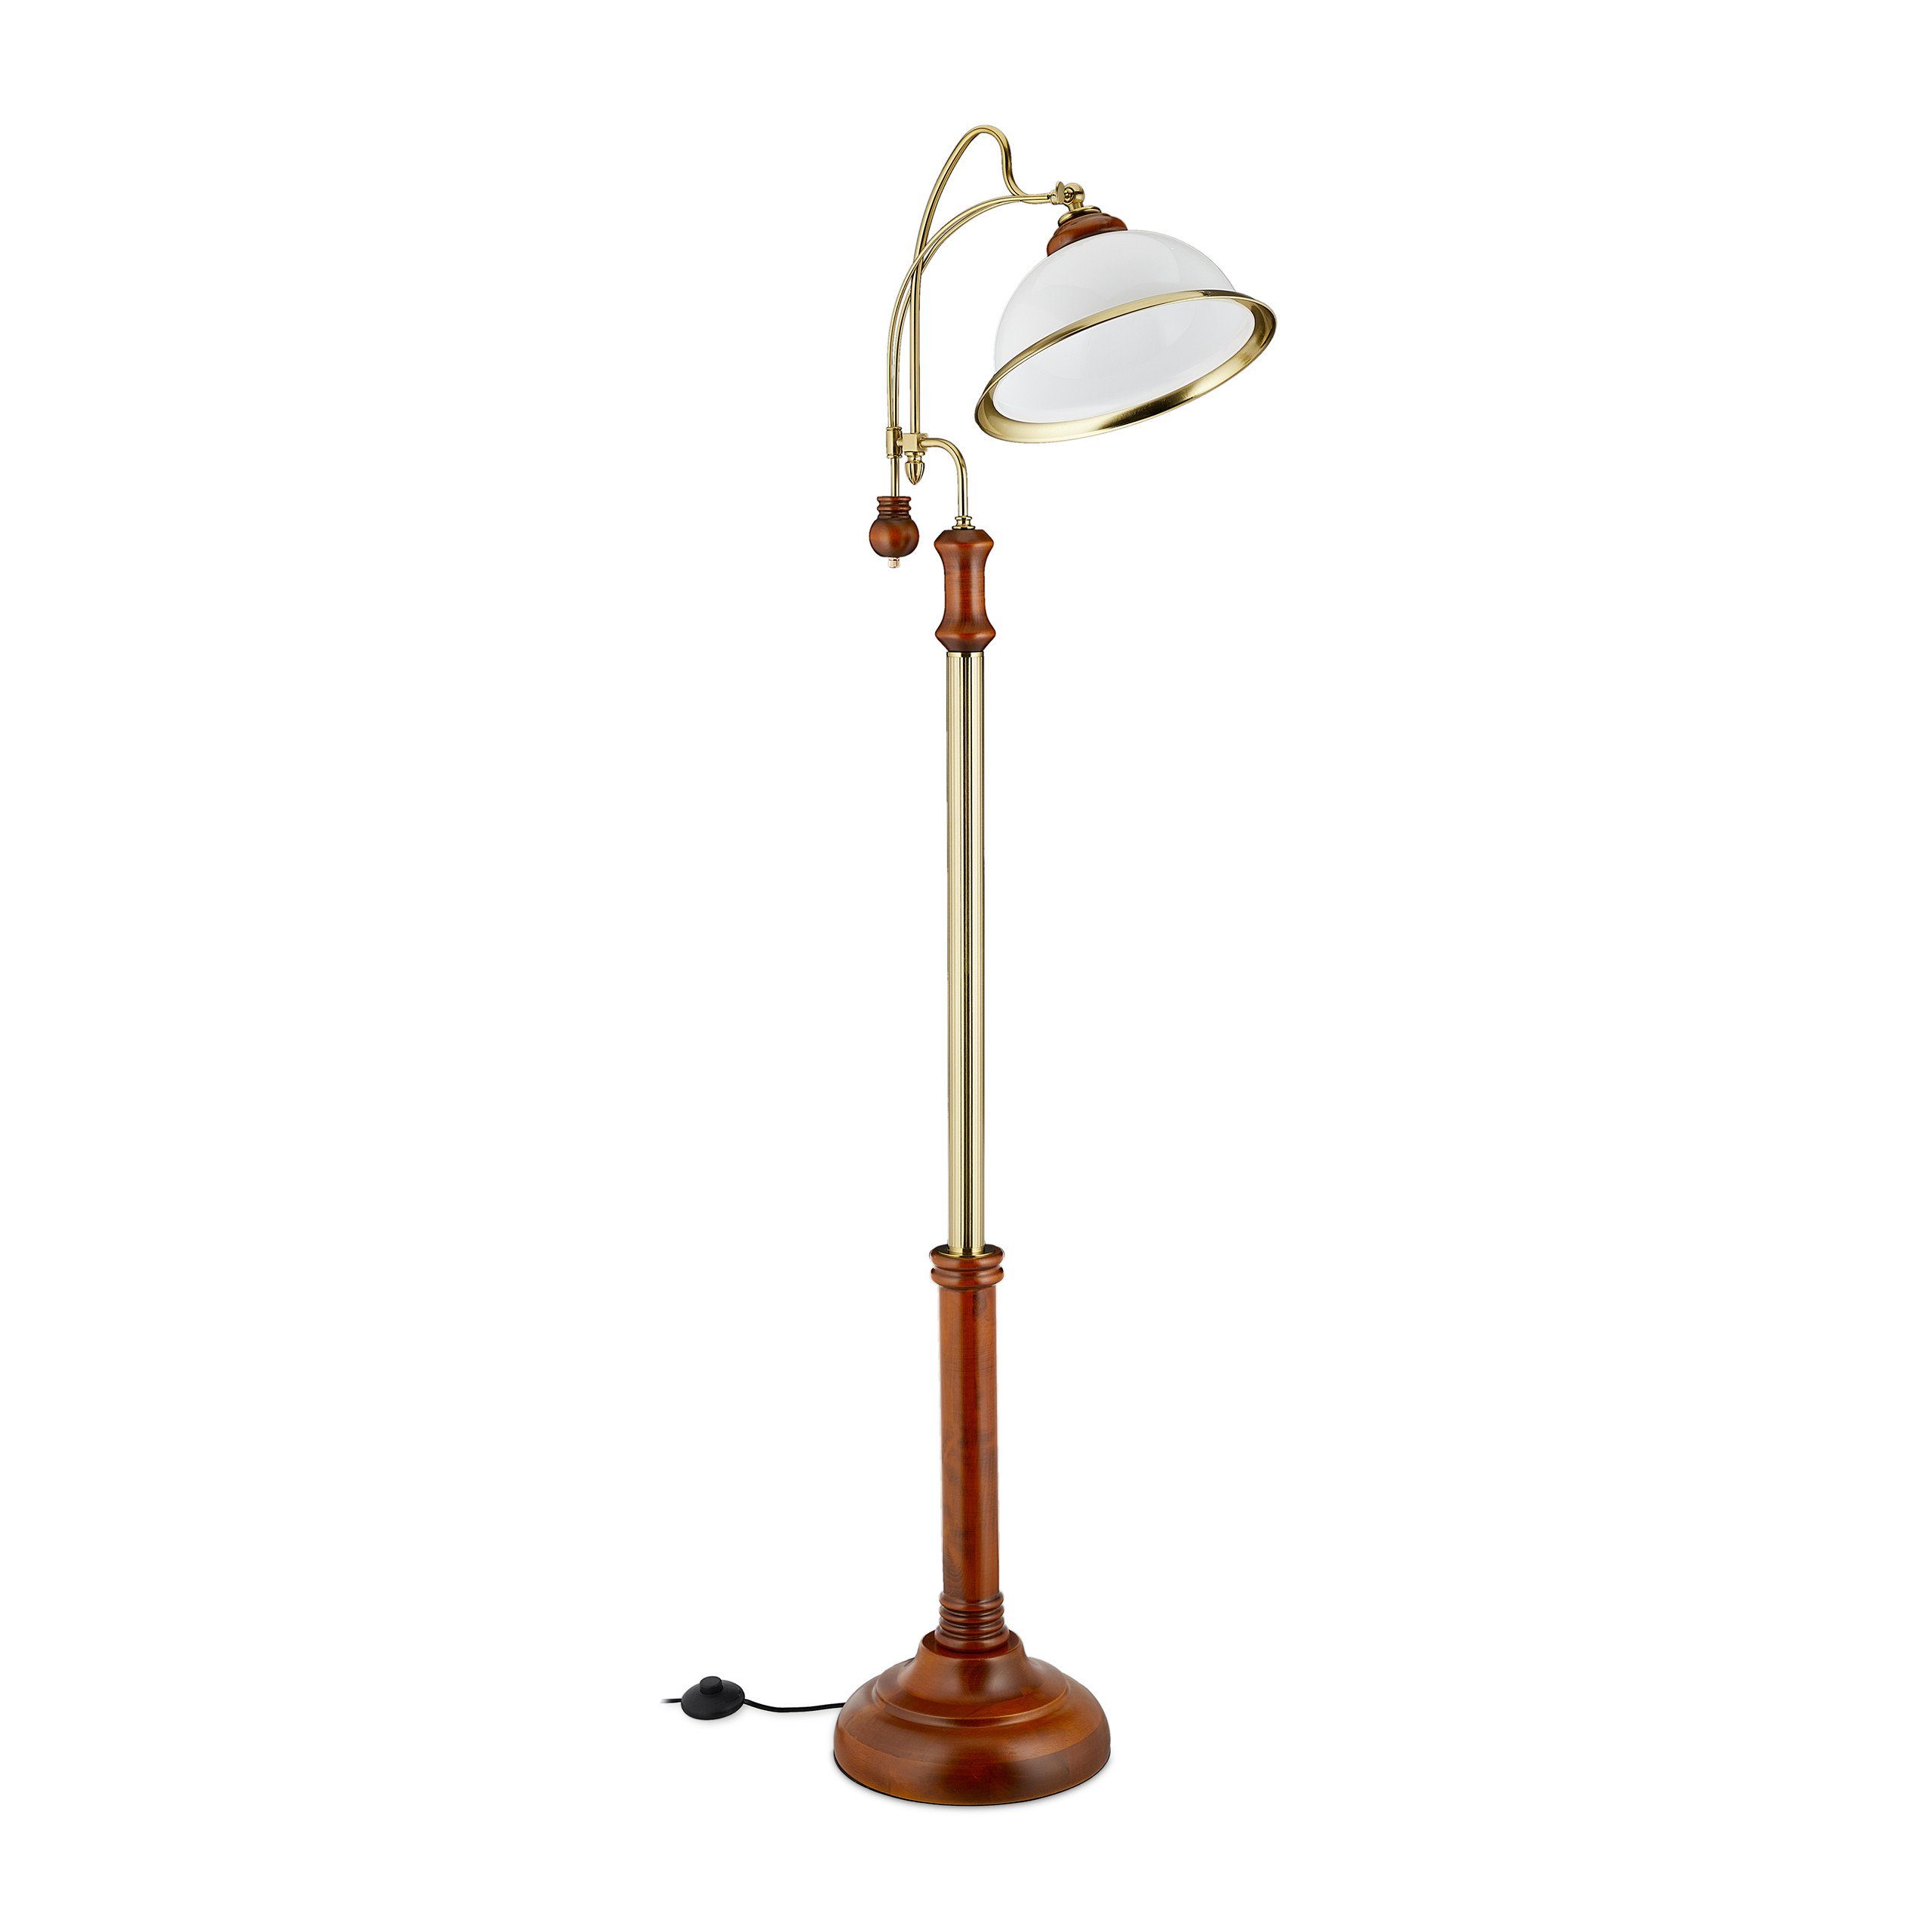 relaxdays Stehlampe Stehlampe Jugendstil, Design: Dekorative Stehlampe im  Jugendstil mit geschwungenem Lampenhals - Milchiger Lampenschirm online  kaufen | OTTO